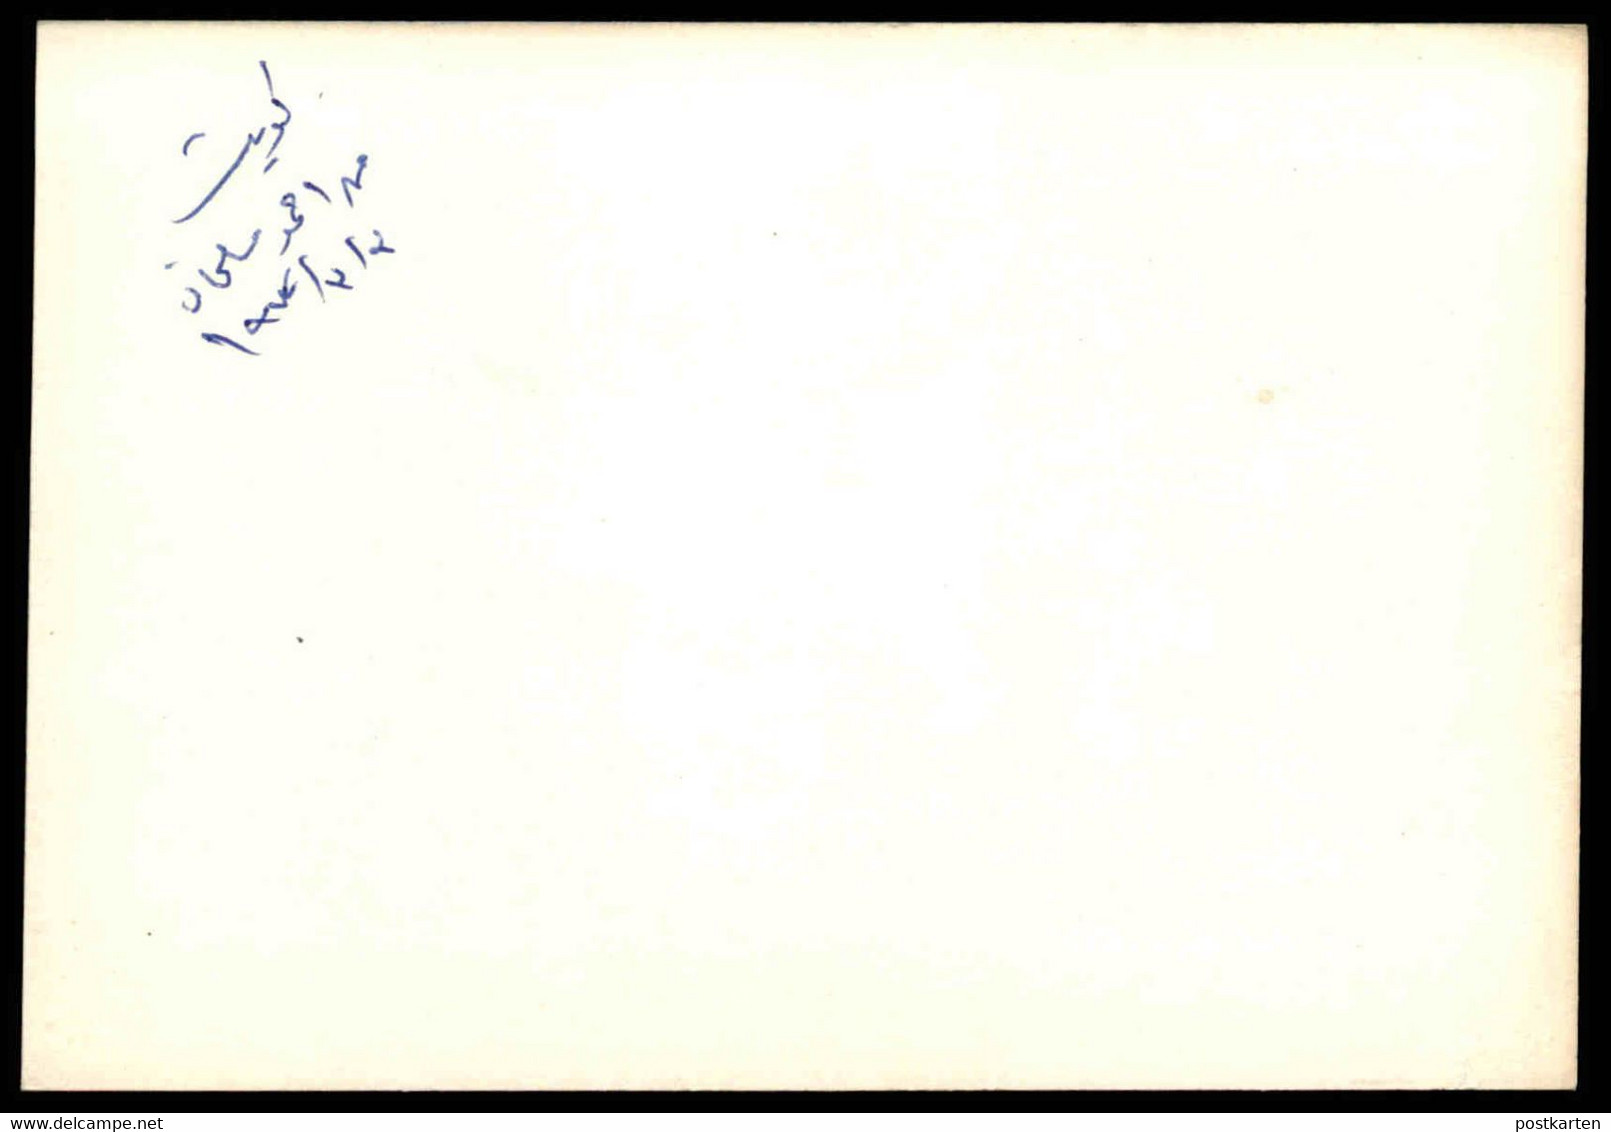 ÄLTERE KARTE KUWAIT WOHNVIERTEL 03.03.1972 AUTOS HÄUSER HAUS AHMED SALMAN Ansichtskarte Postcard Cpa AK - Kuwait